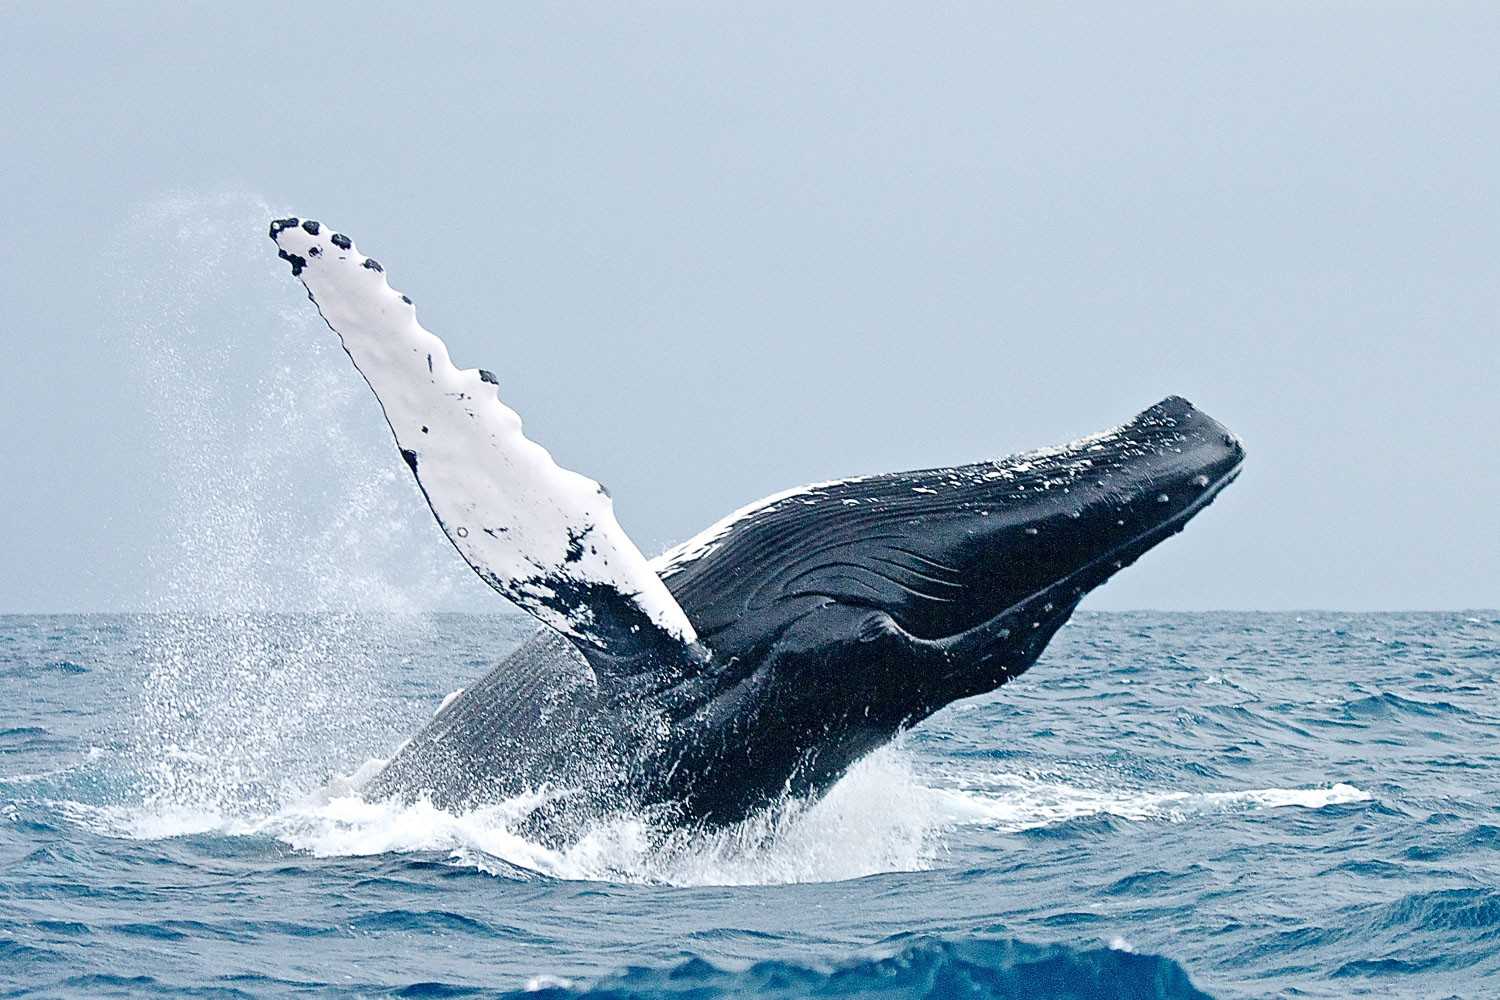 Гренландский кит - описание, характеристика, факты, фото и видео полярных китов